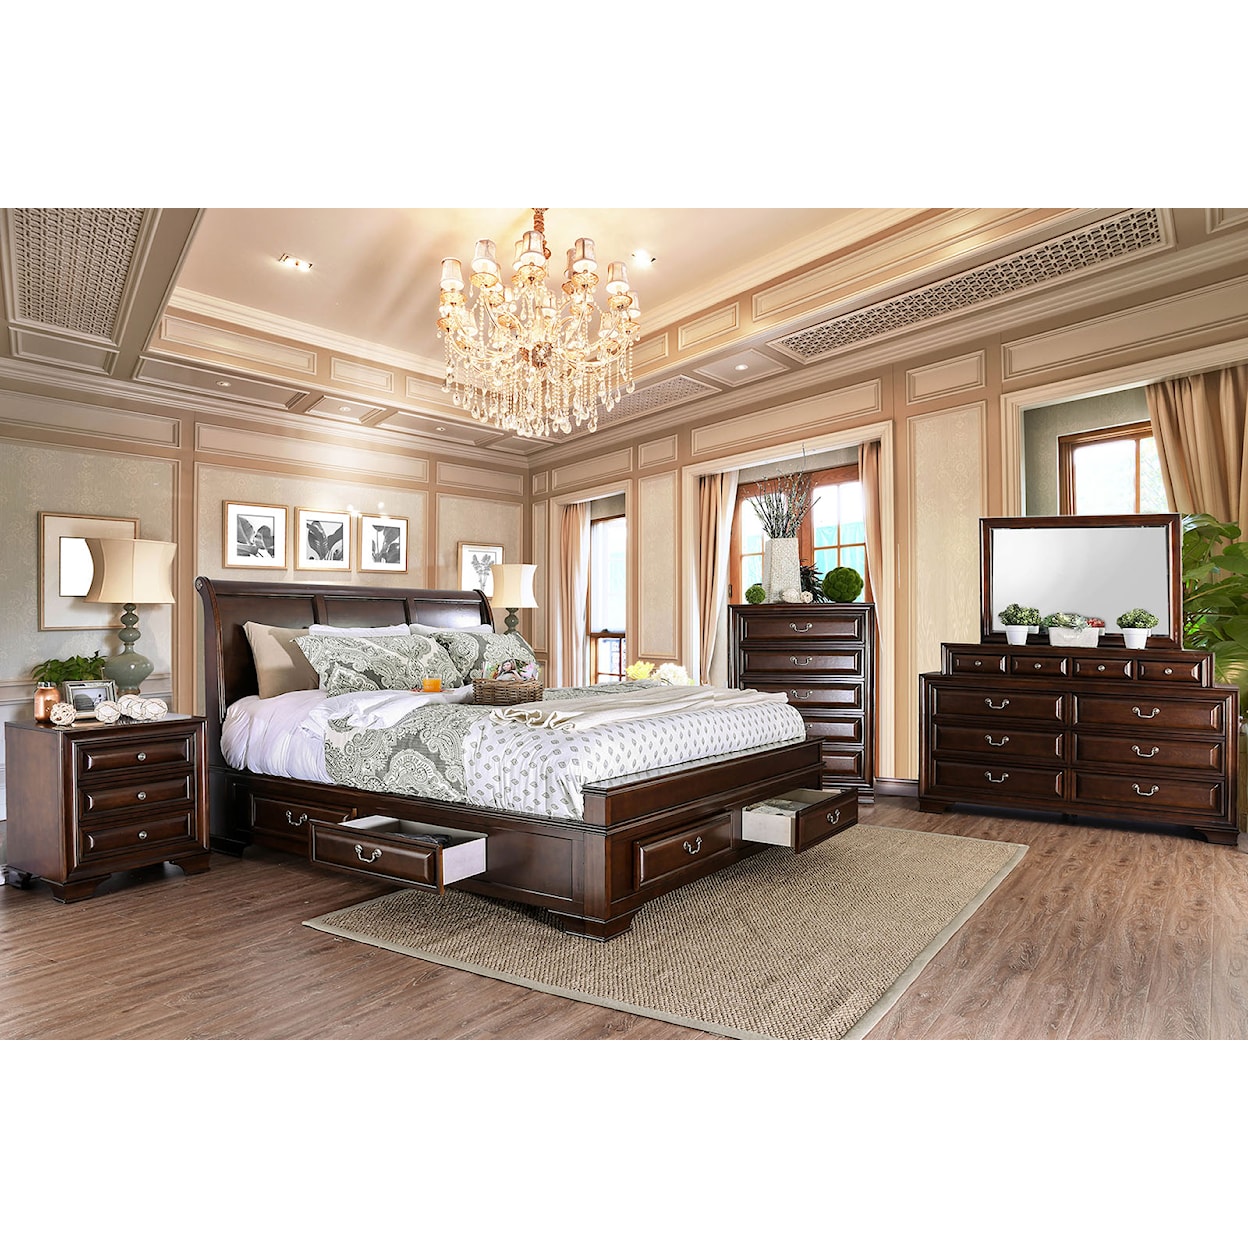 Furniture of America Brandt 5-Piece Queen Bedroom Set